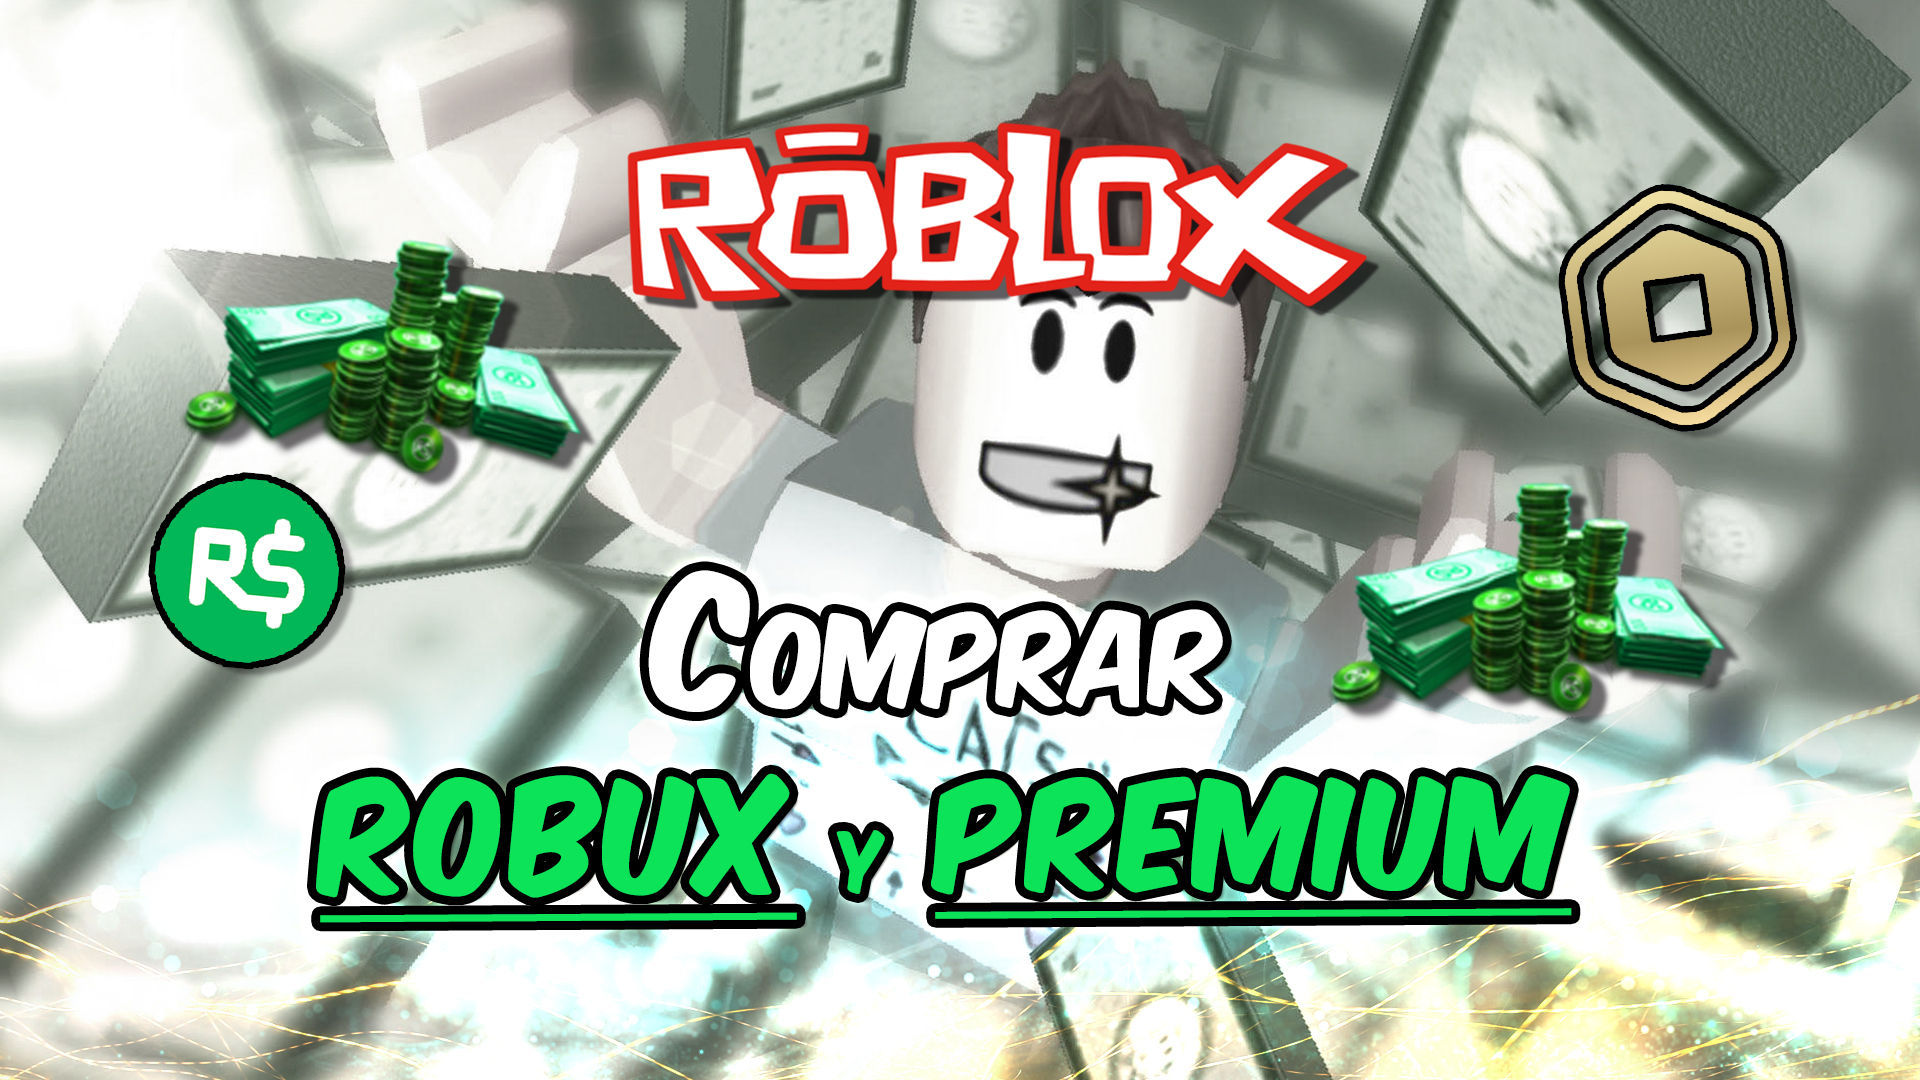 Roblox Comprar Robux Y Hacerse Premium Precios Ofertas Y Ventajas - comprando robux rroblox